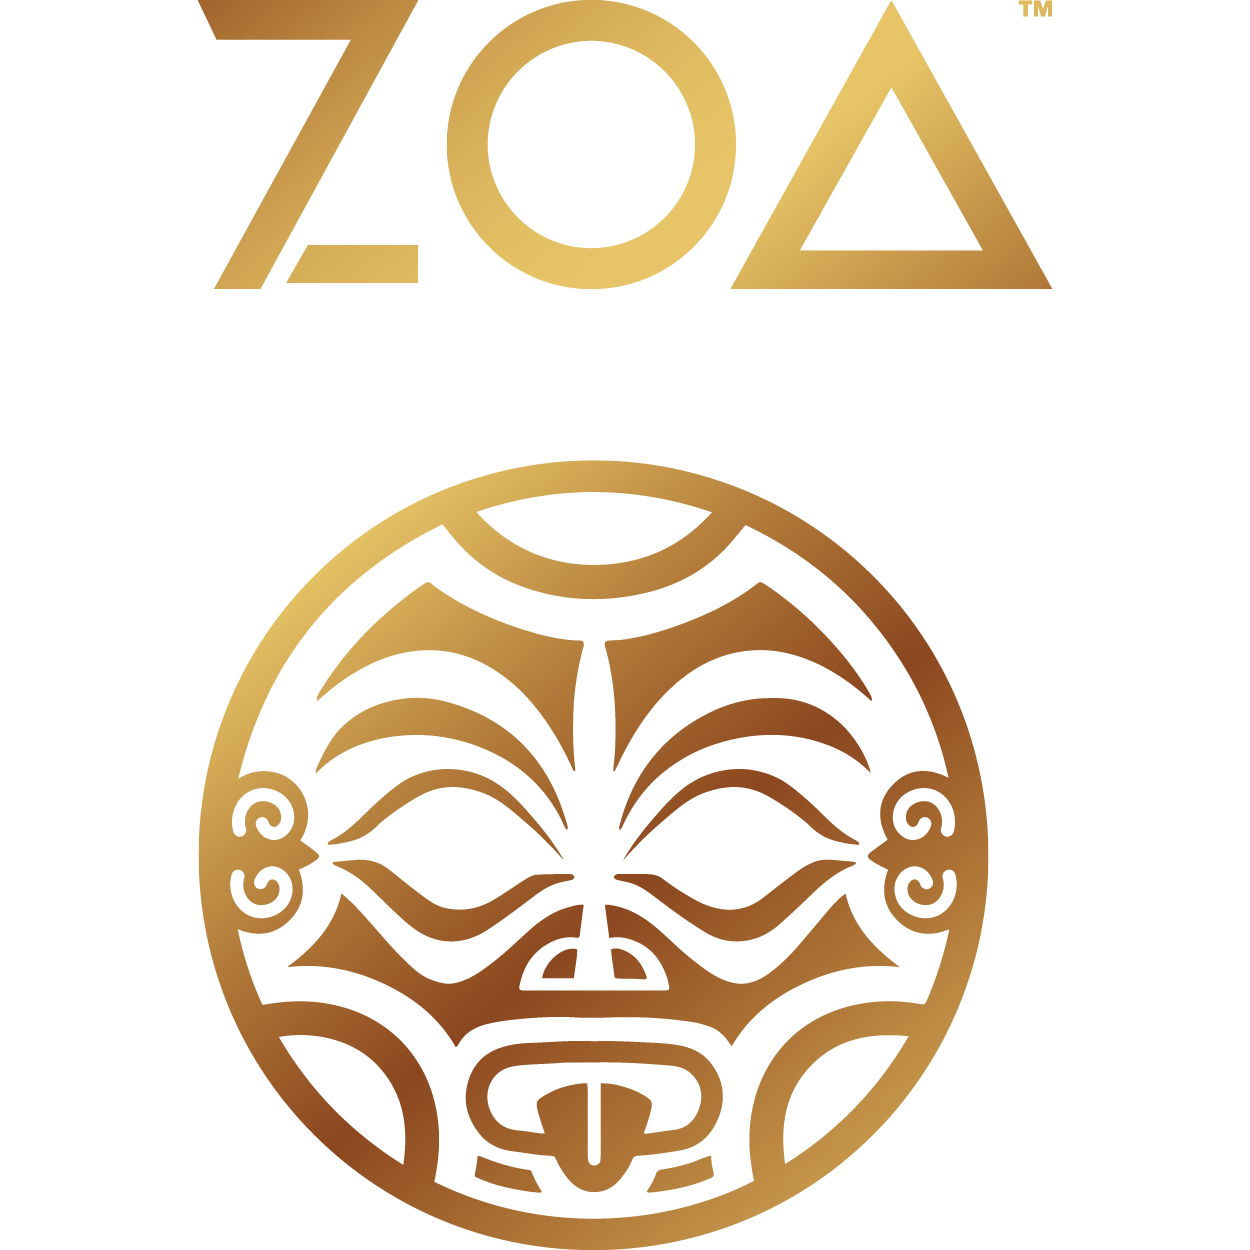 Zoa Energy logo